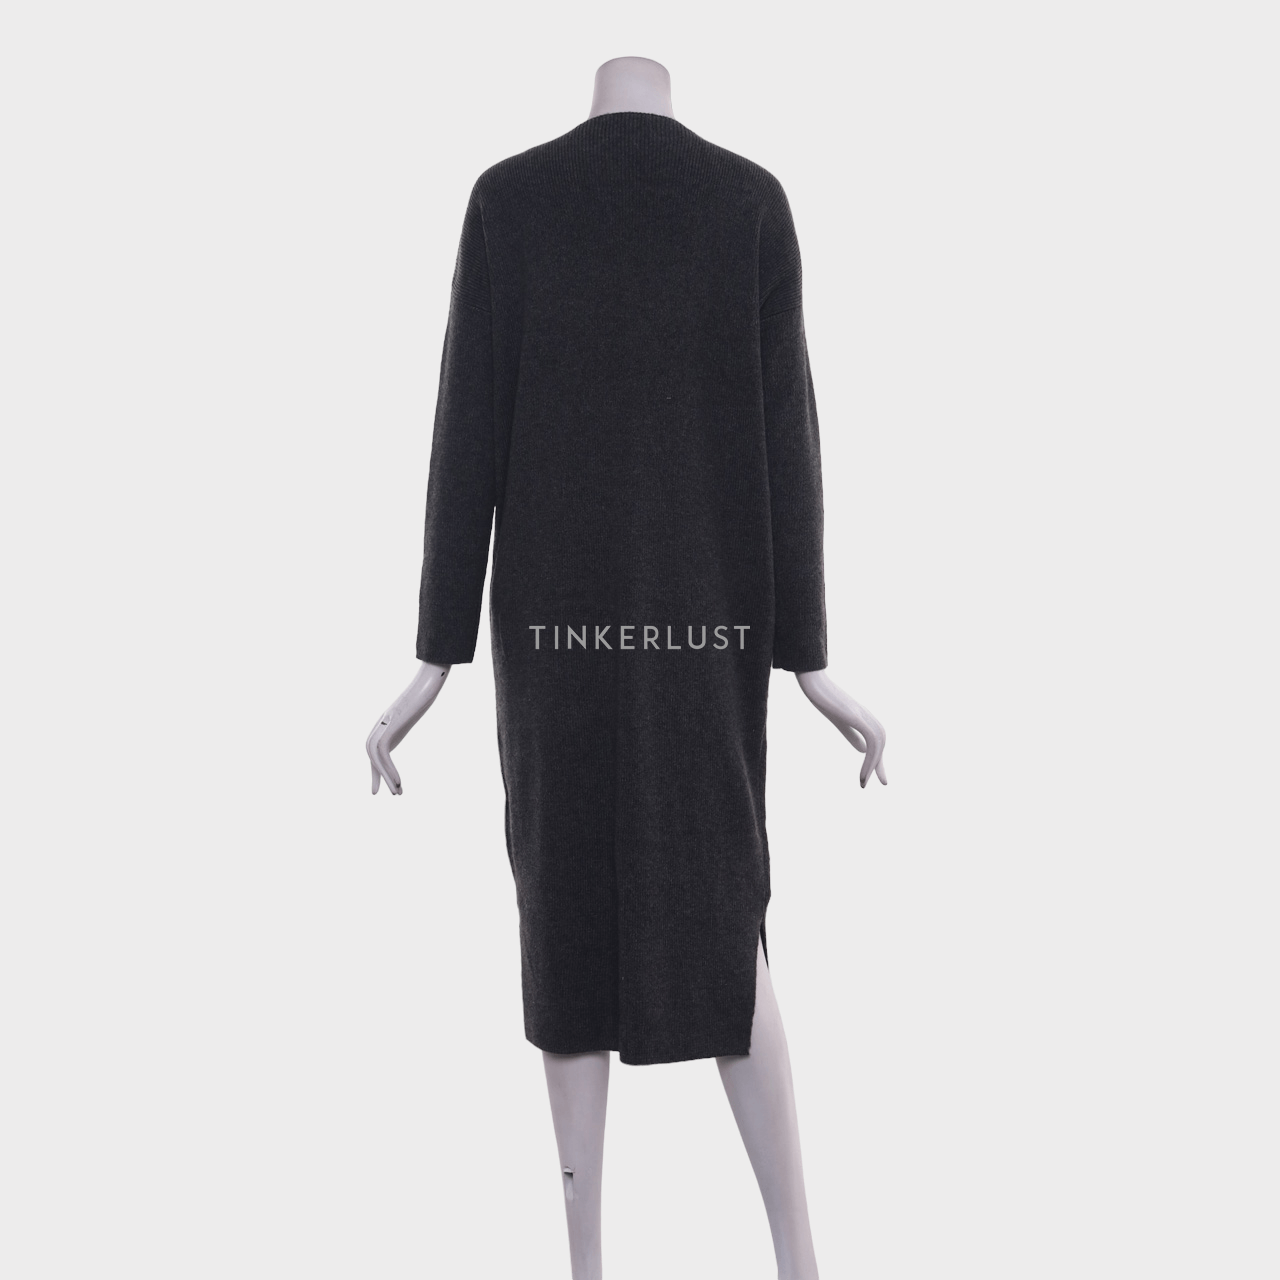 UNIQLO Grey Midi Dress